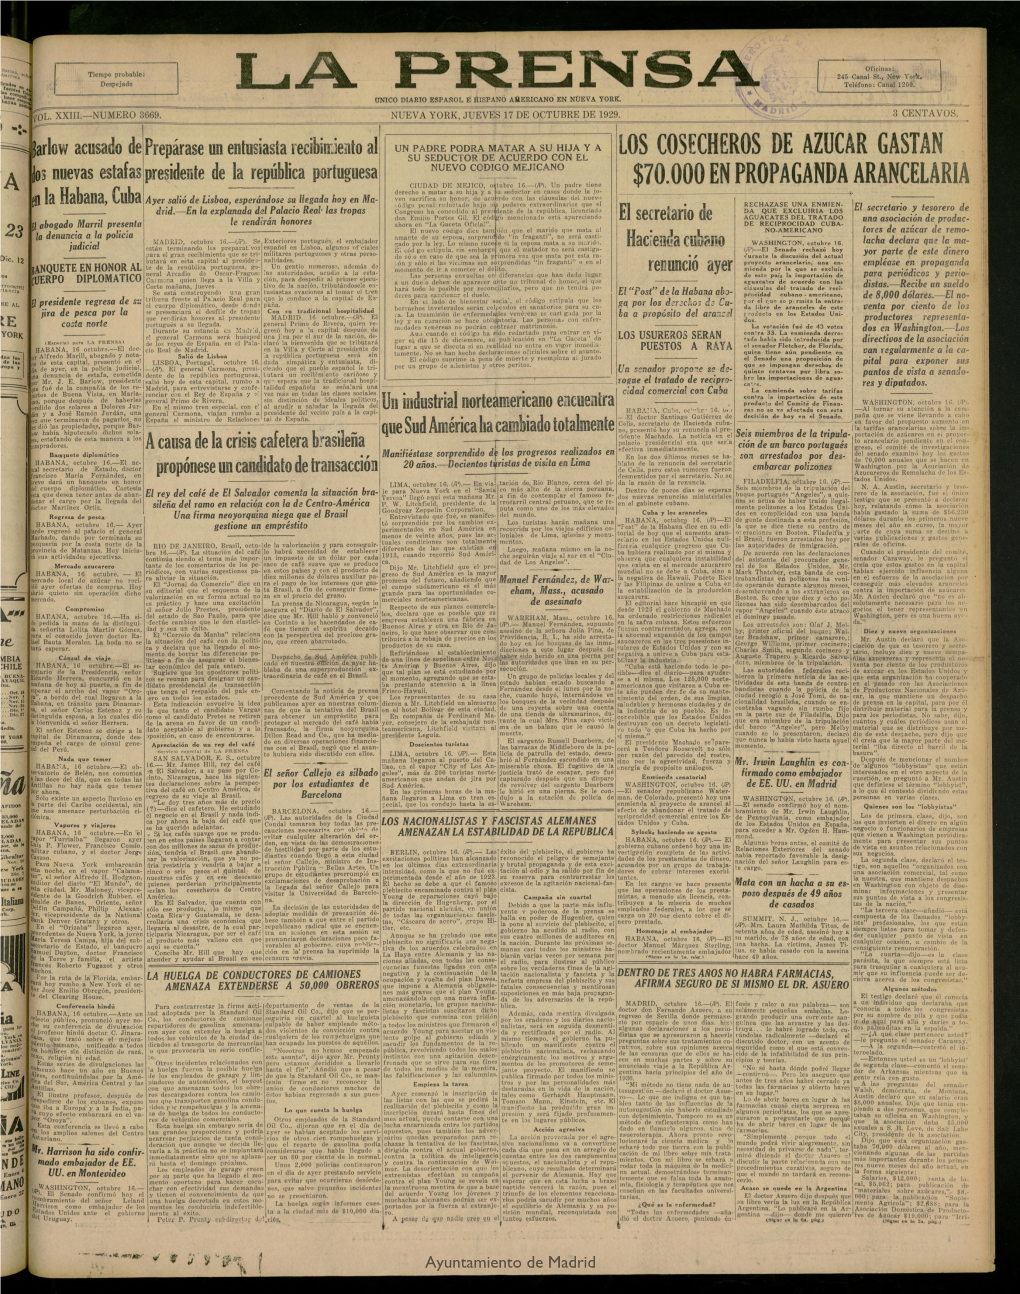 La Prensa: Único Diario Español E Hispano Americano En Nueva York, Del 17 De Octubre De 1929, Nº 3669